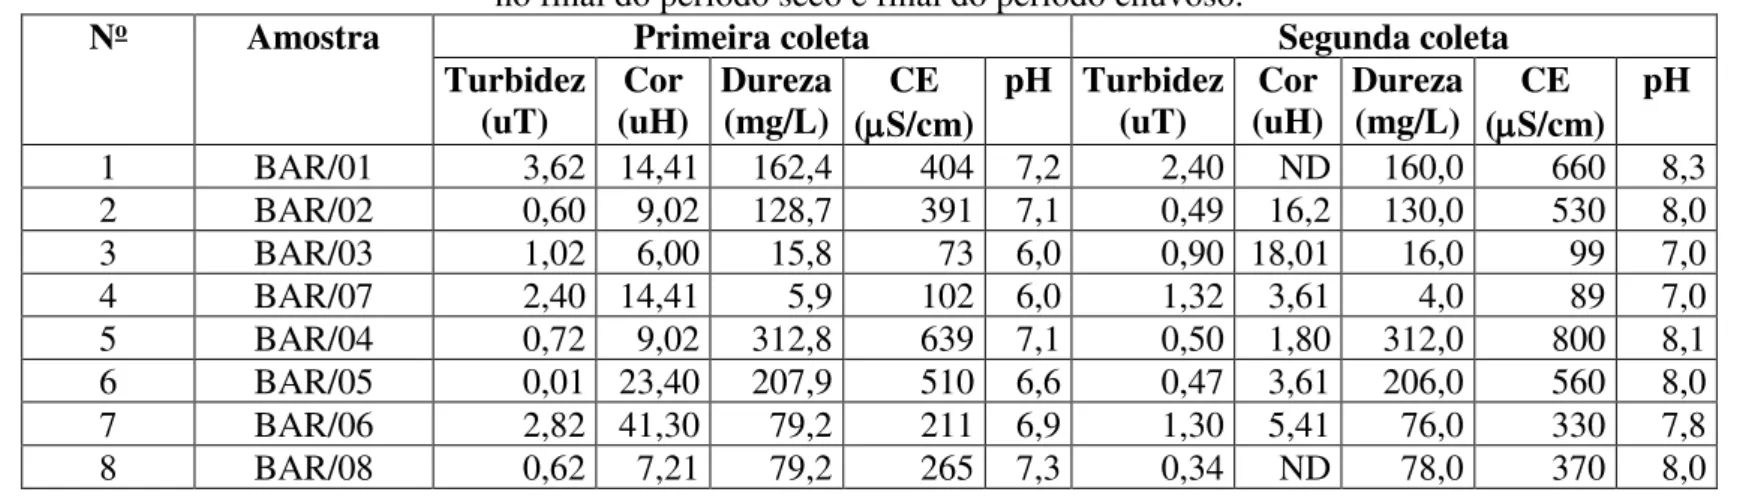 Tabela 4.1 - Parâmetros físico-químicos de amostras de água subterrânea em Barbalha,   no final do período seco e final do período chuvoso